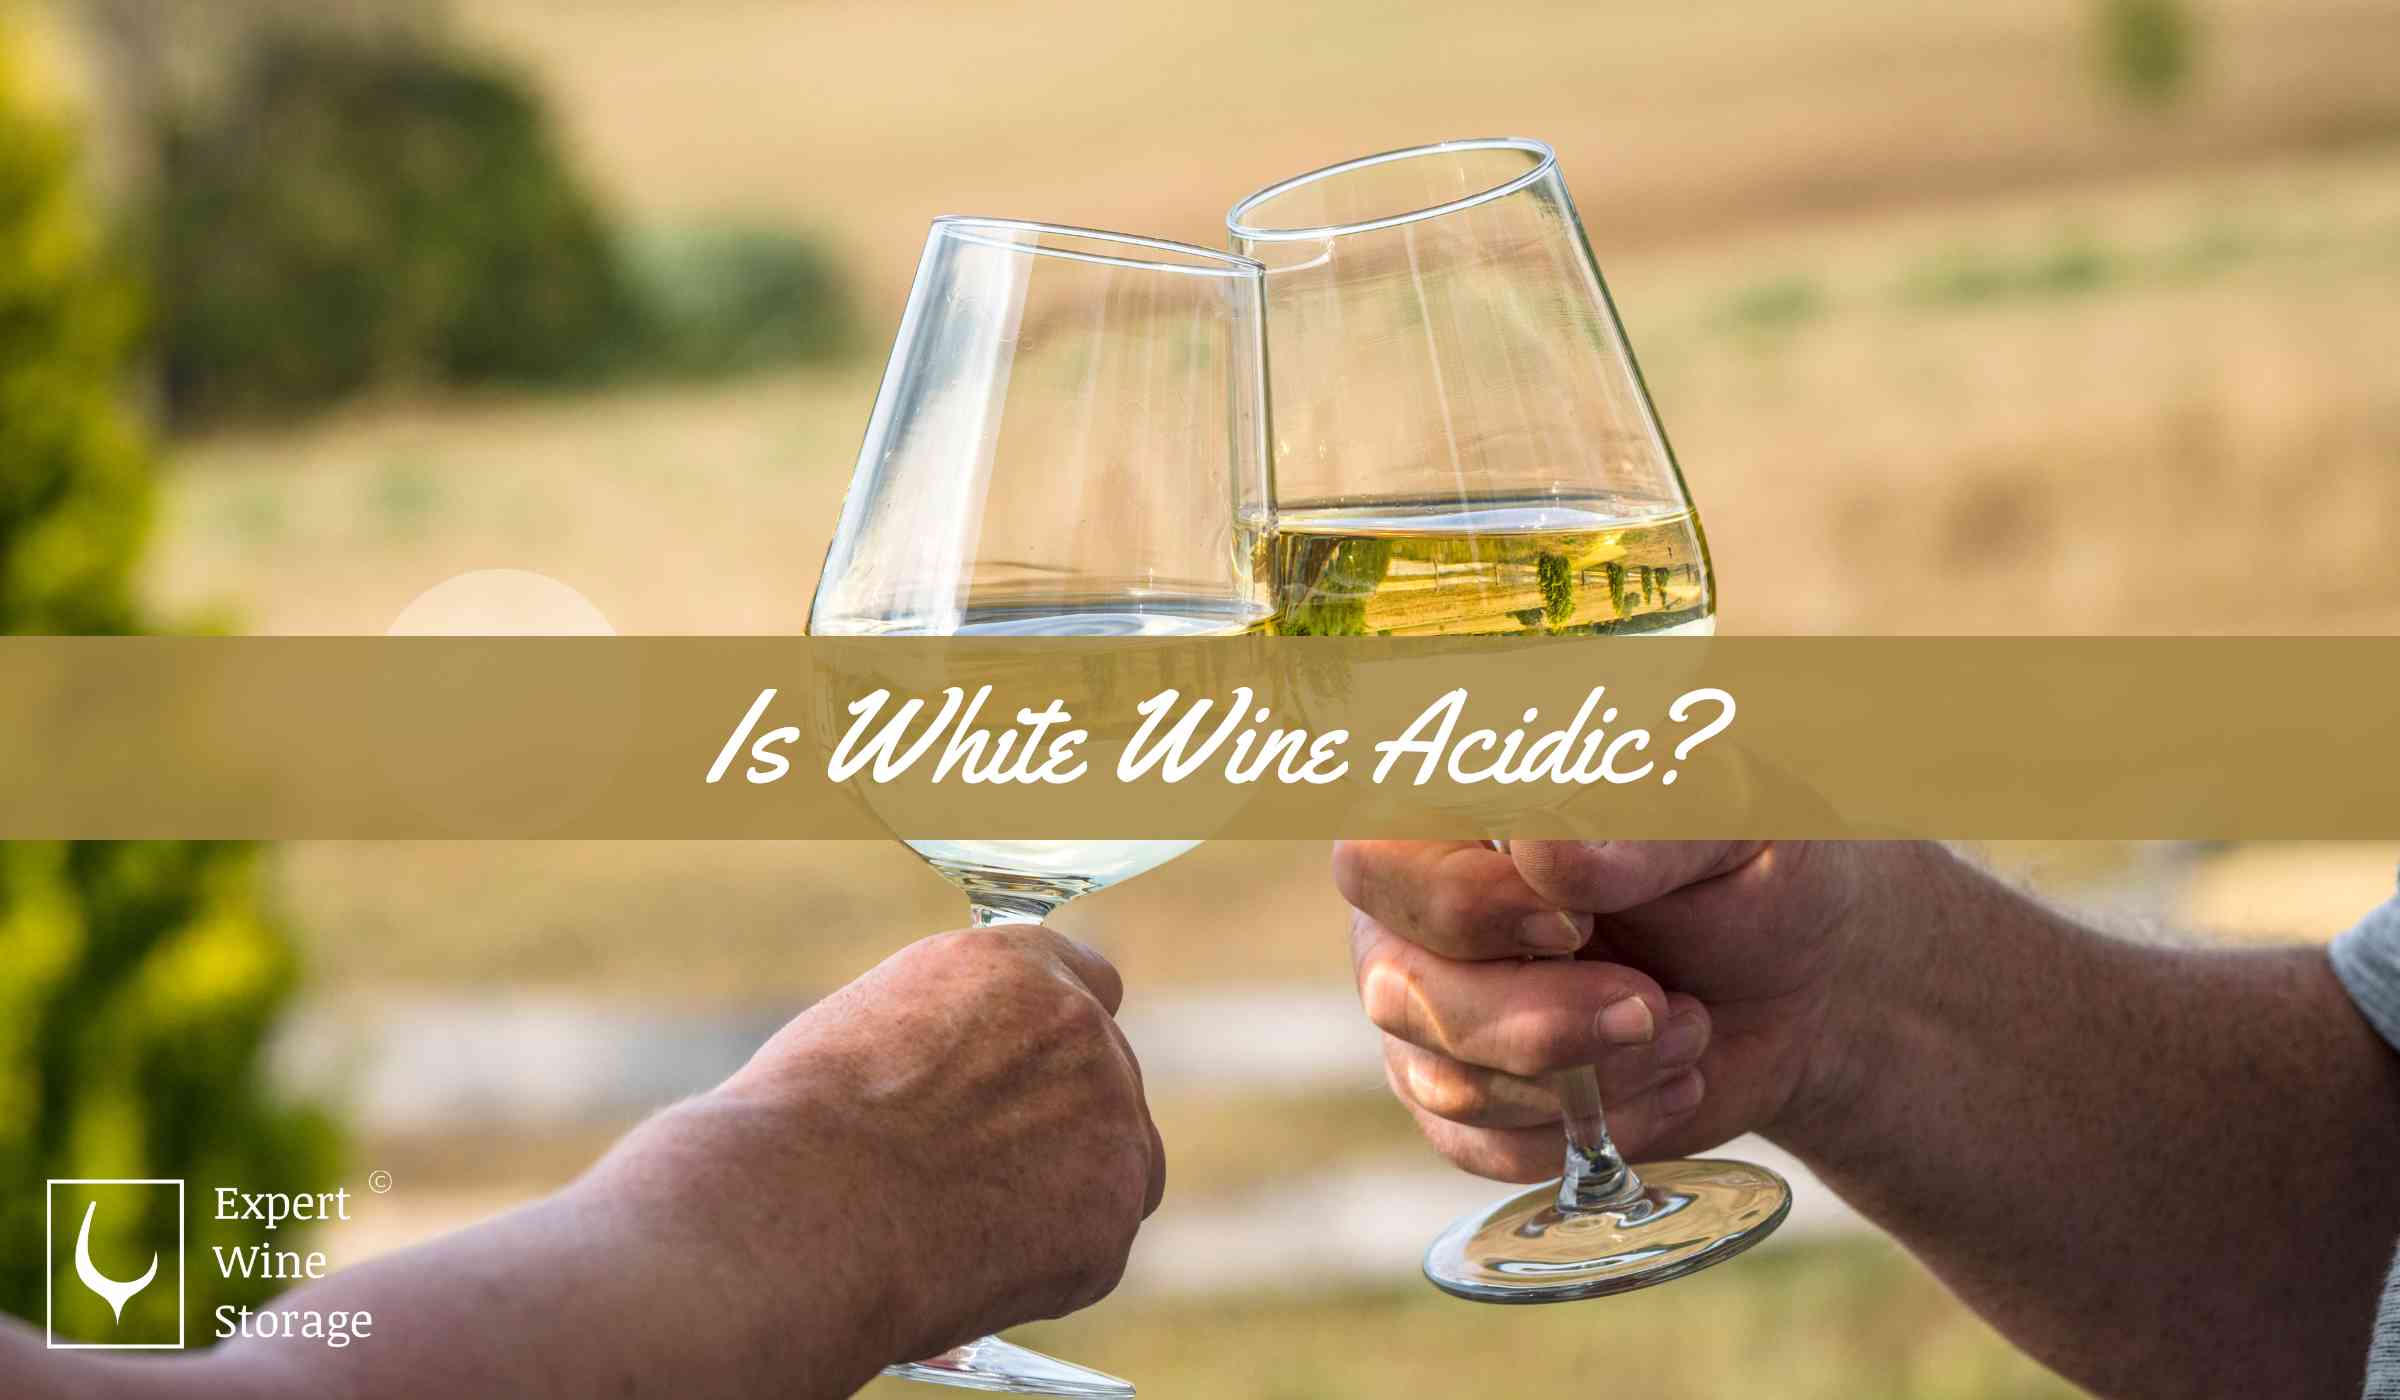 White Wine Acidity